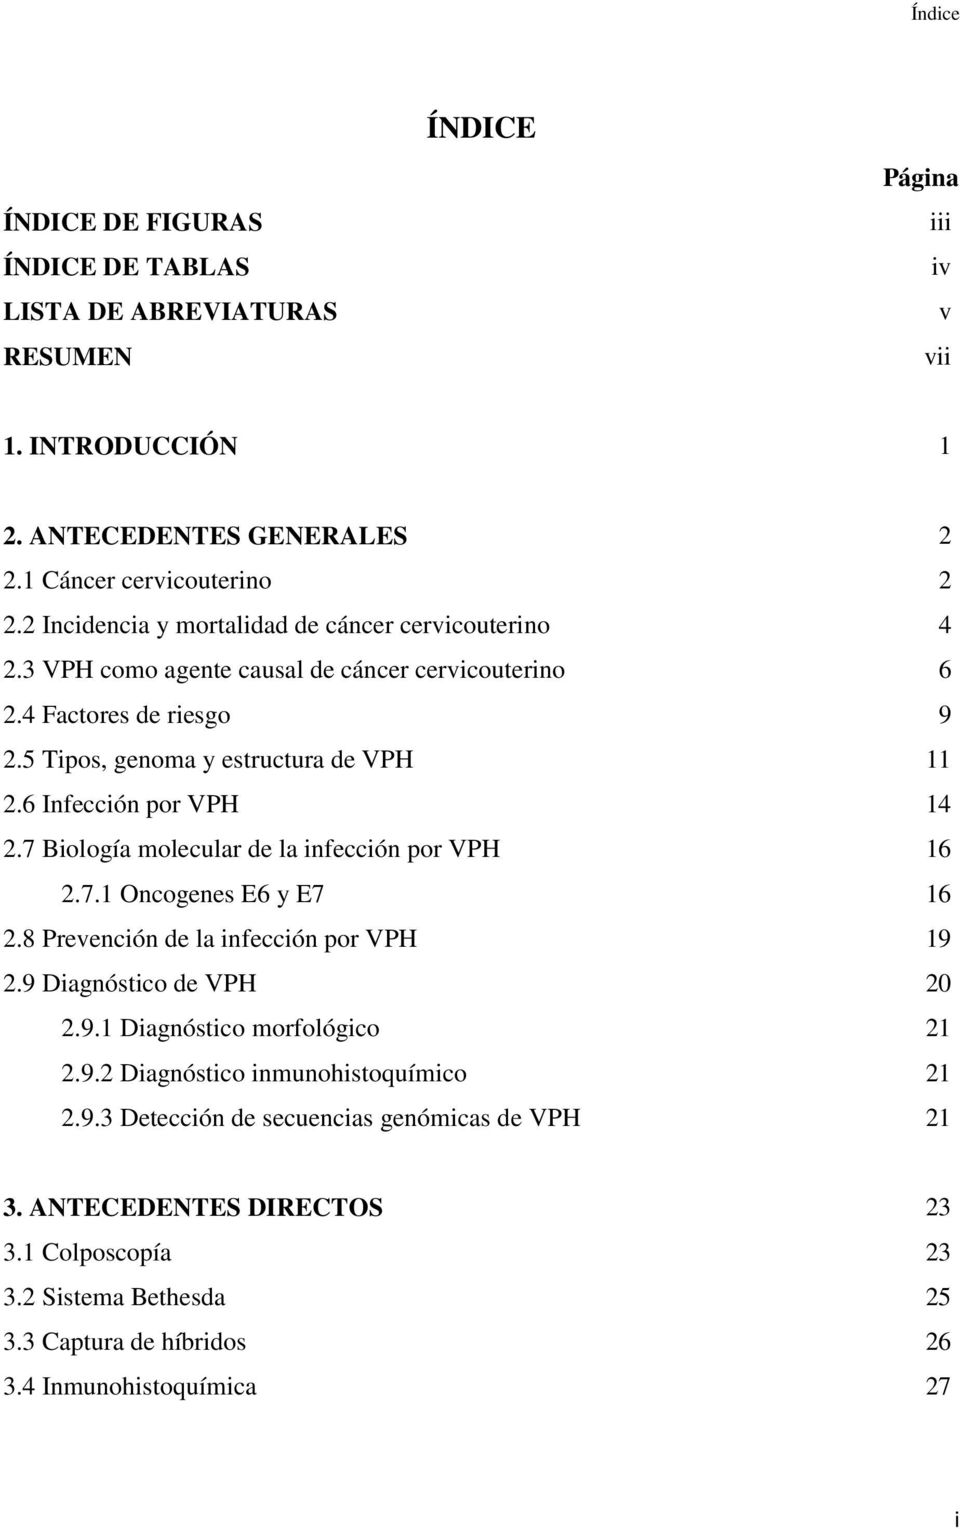 6 Infección por VPH 14 2.7 Biología molecular de la infección por VPH 16 2.7.1 Oncogenes E6 y E7 16 2.8 Prevención de la infección por VPH 19 2.9 Diagnóstico de VPH 20 2.9.1 Diagnóstico morfológico 21 2.